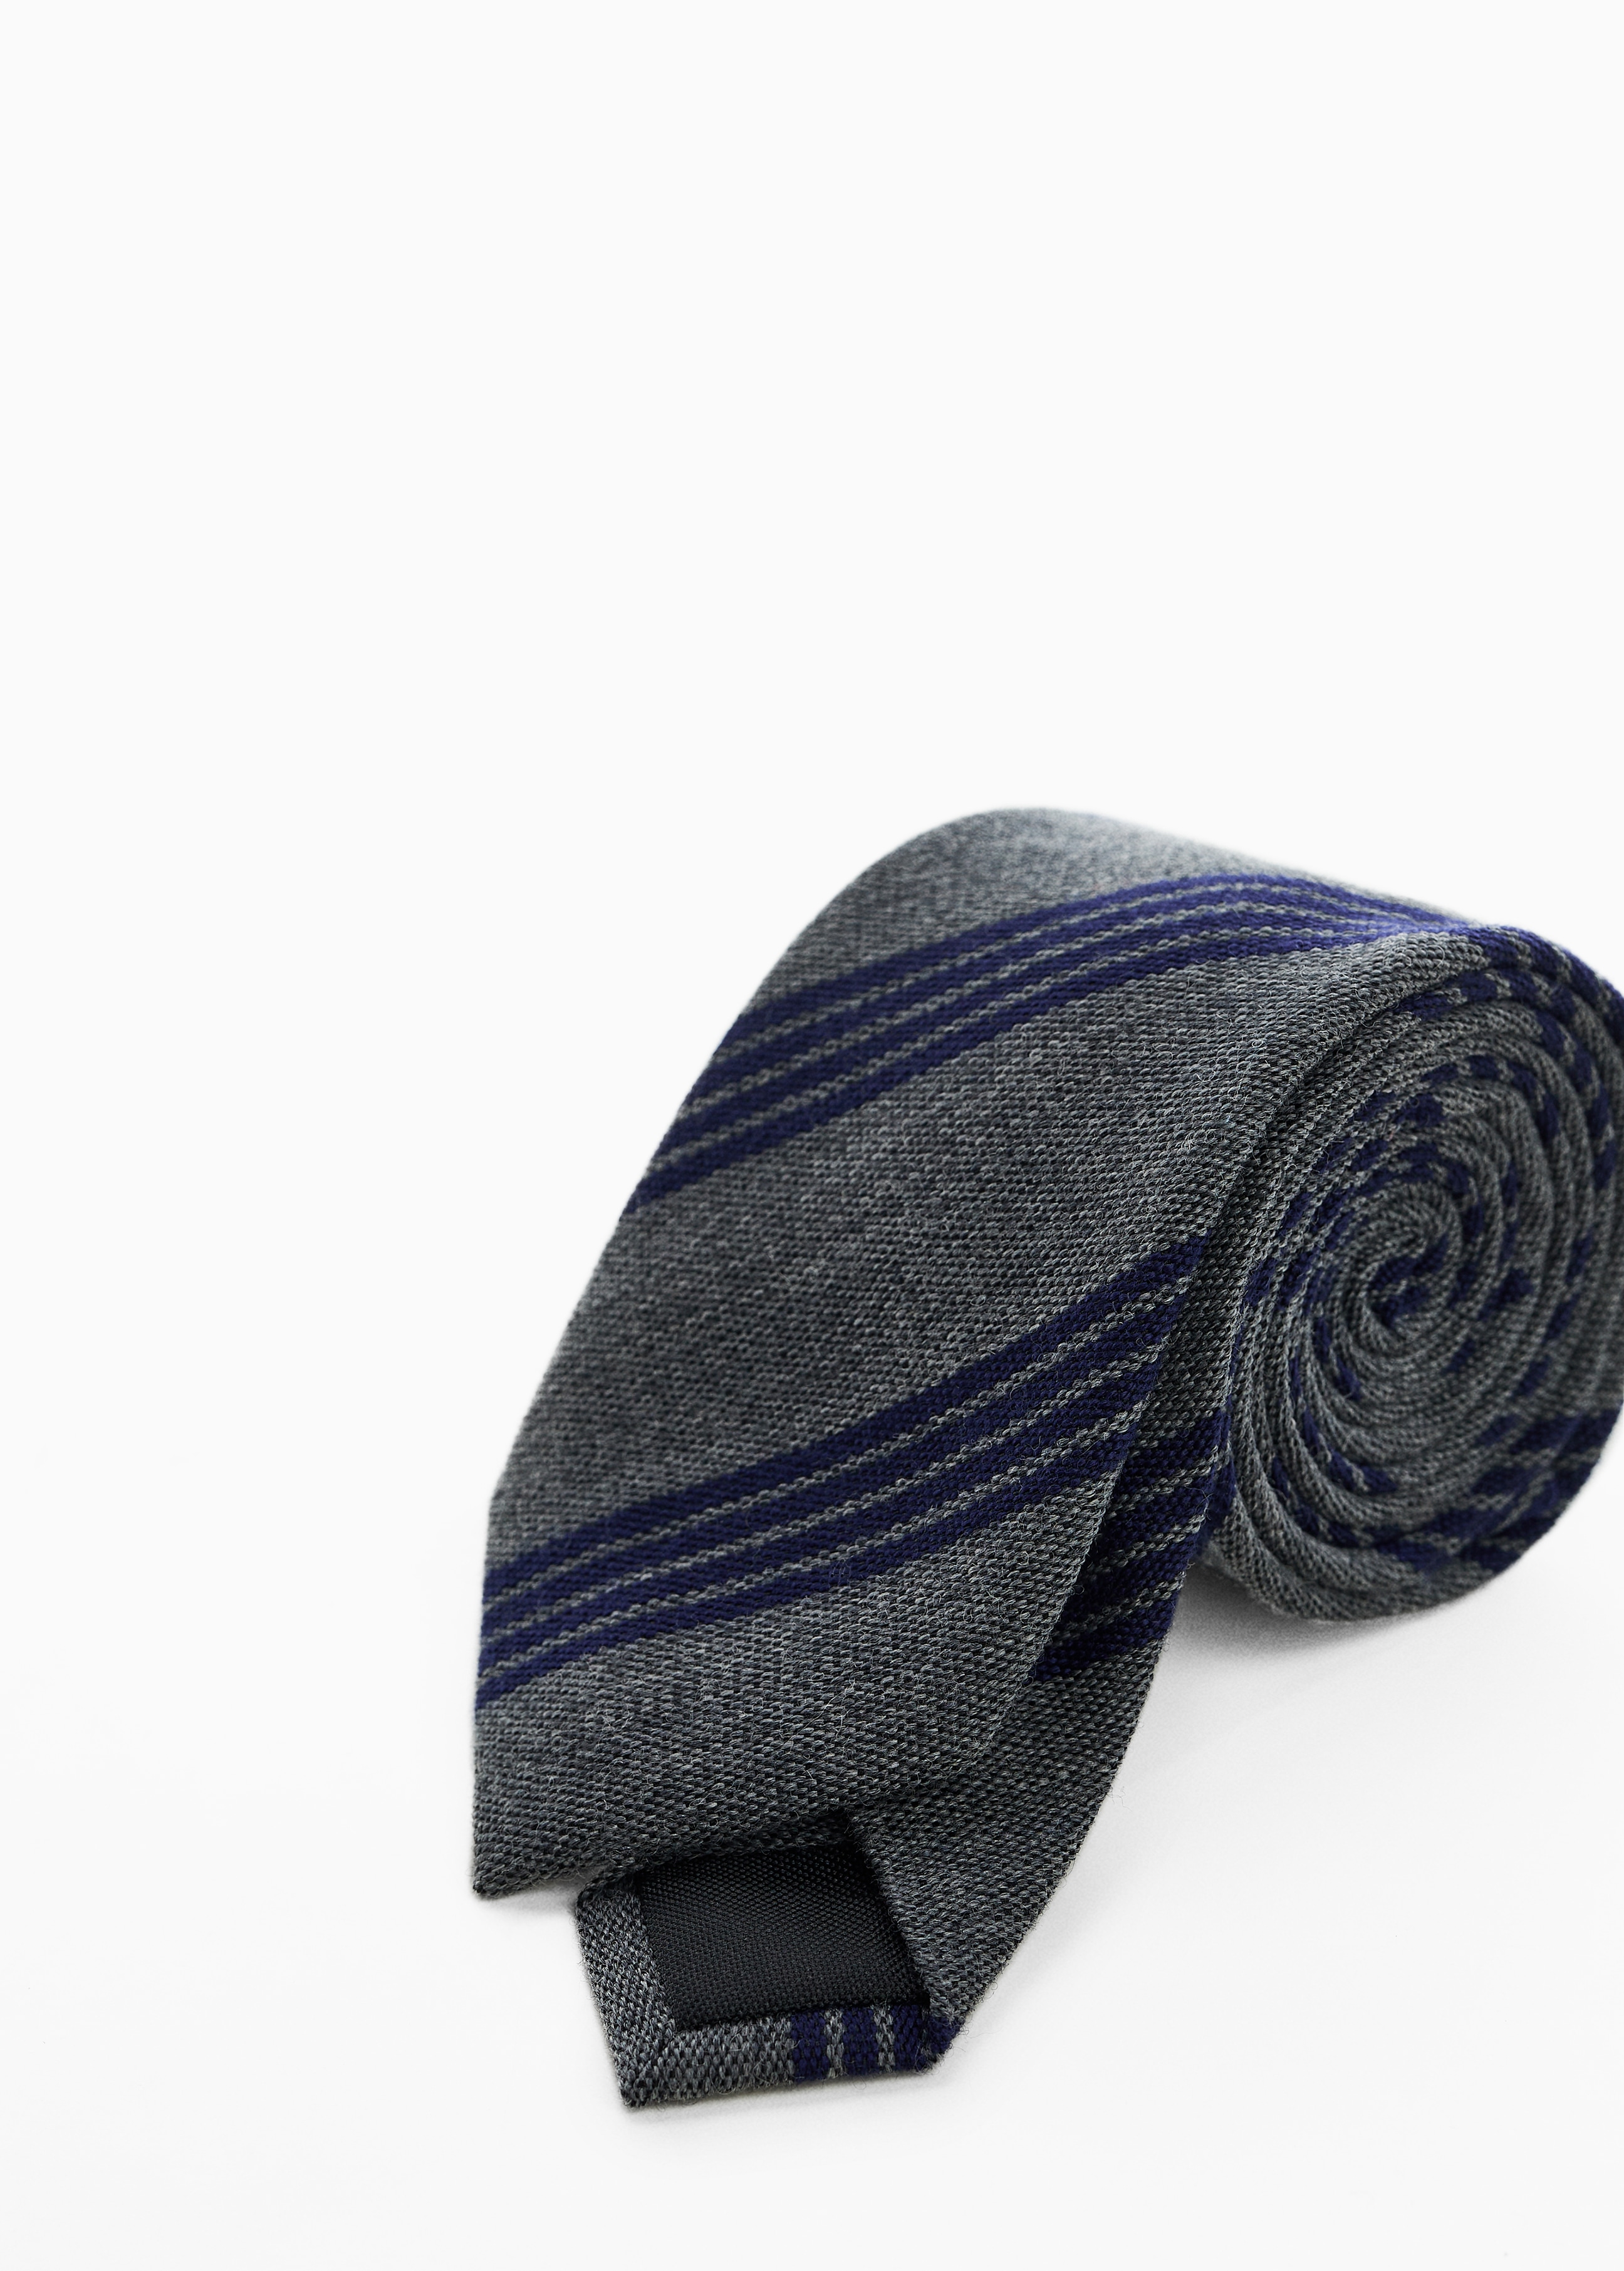 Crease-resistant wool tie - Medium plane